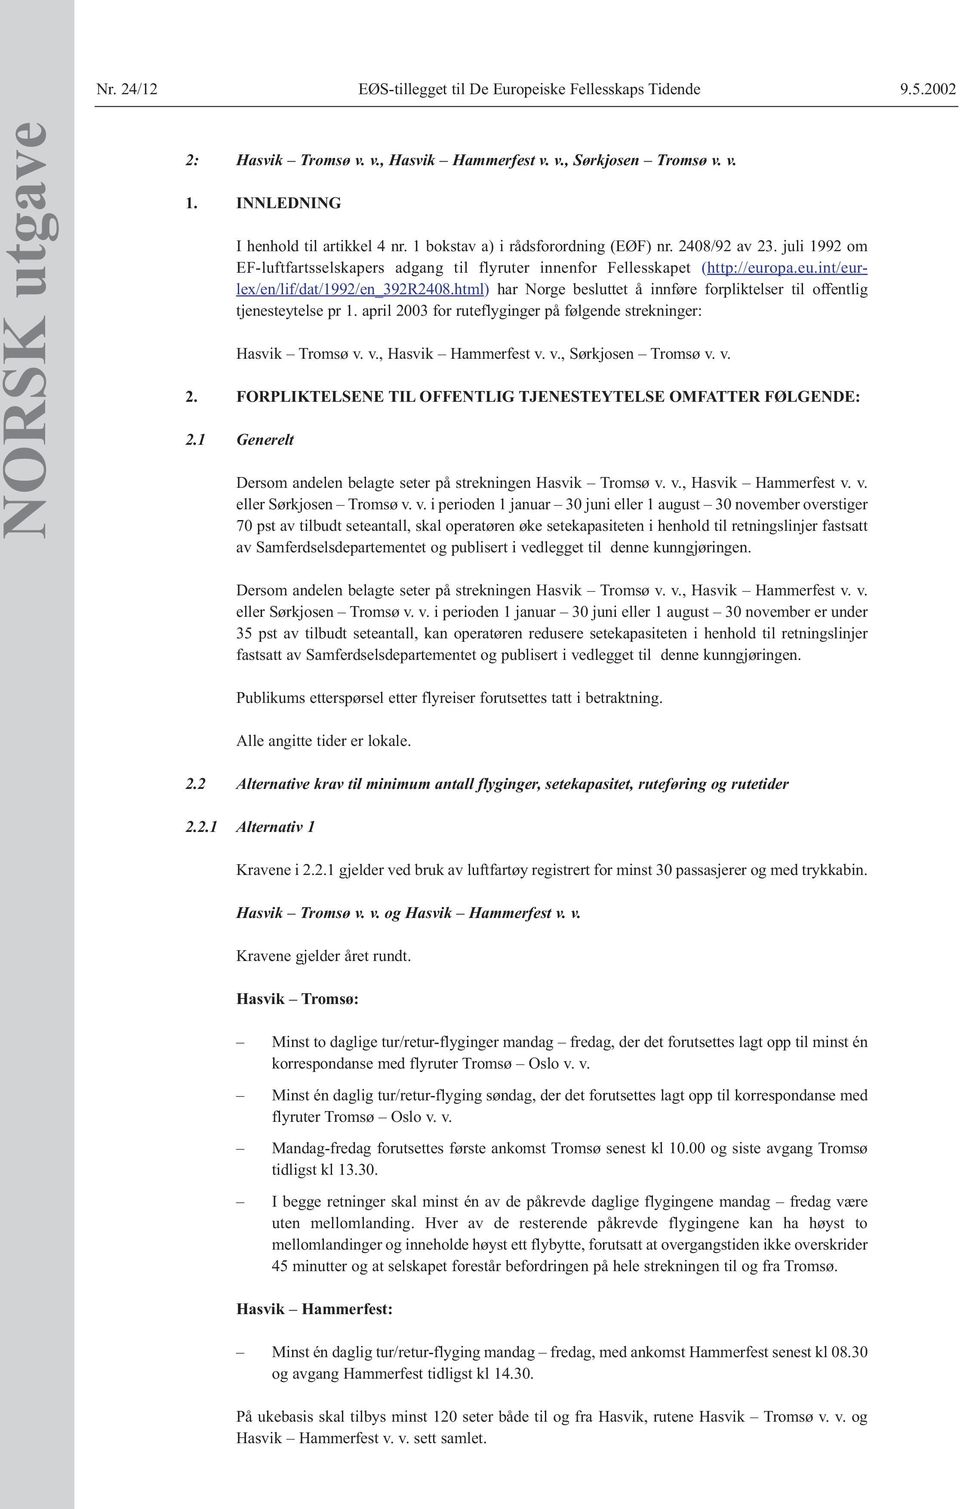 html) har Norge besluttet å innføre forpliktelser til offentlig tjenesteytelse pr 1. april 2003 for ruteflyginger på følgende strekninger: Hasvik Tromsø v. v., Hasvik Hammerfest v. v., Sørkjosen Tromsø v.